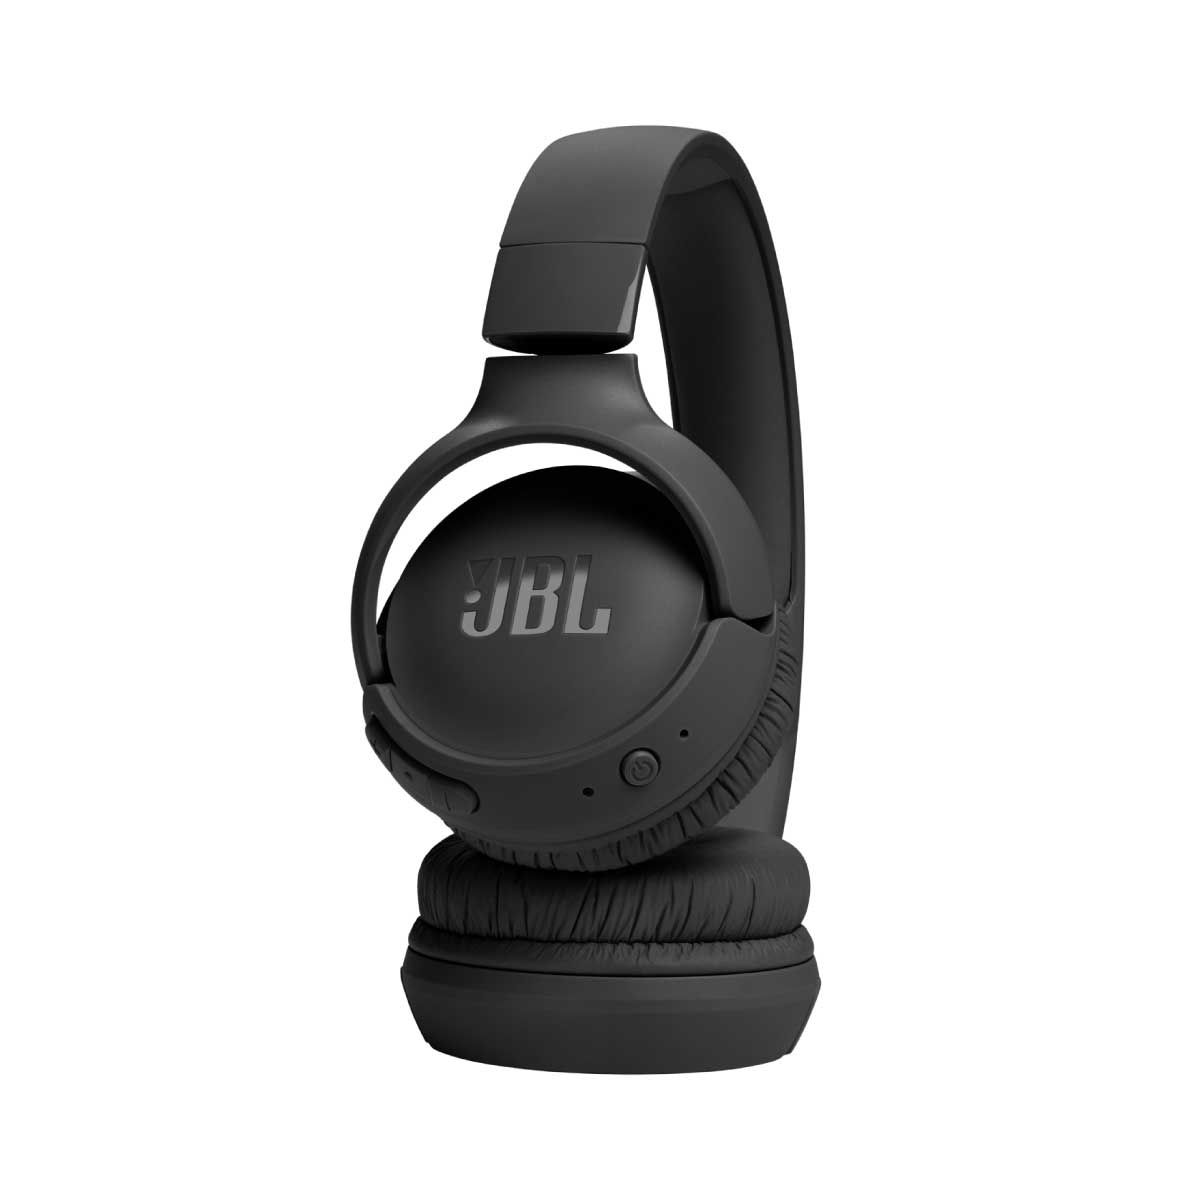 หูฟัง JBL Tune รุ่น TUN520BTBK Black สีดำ